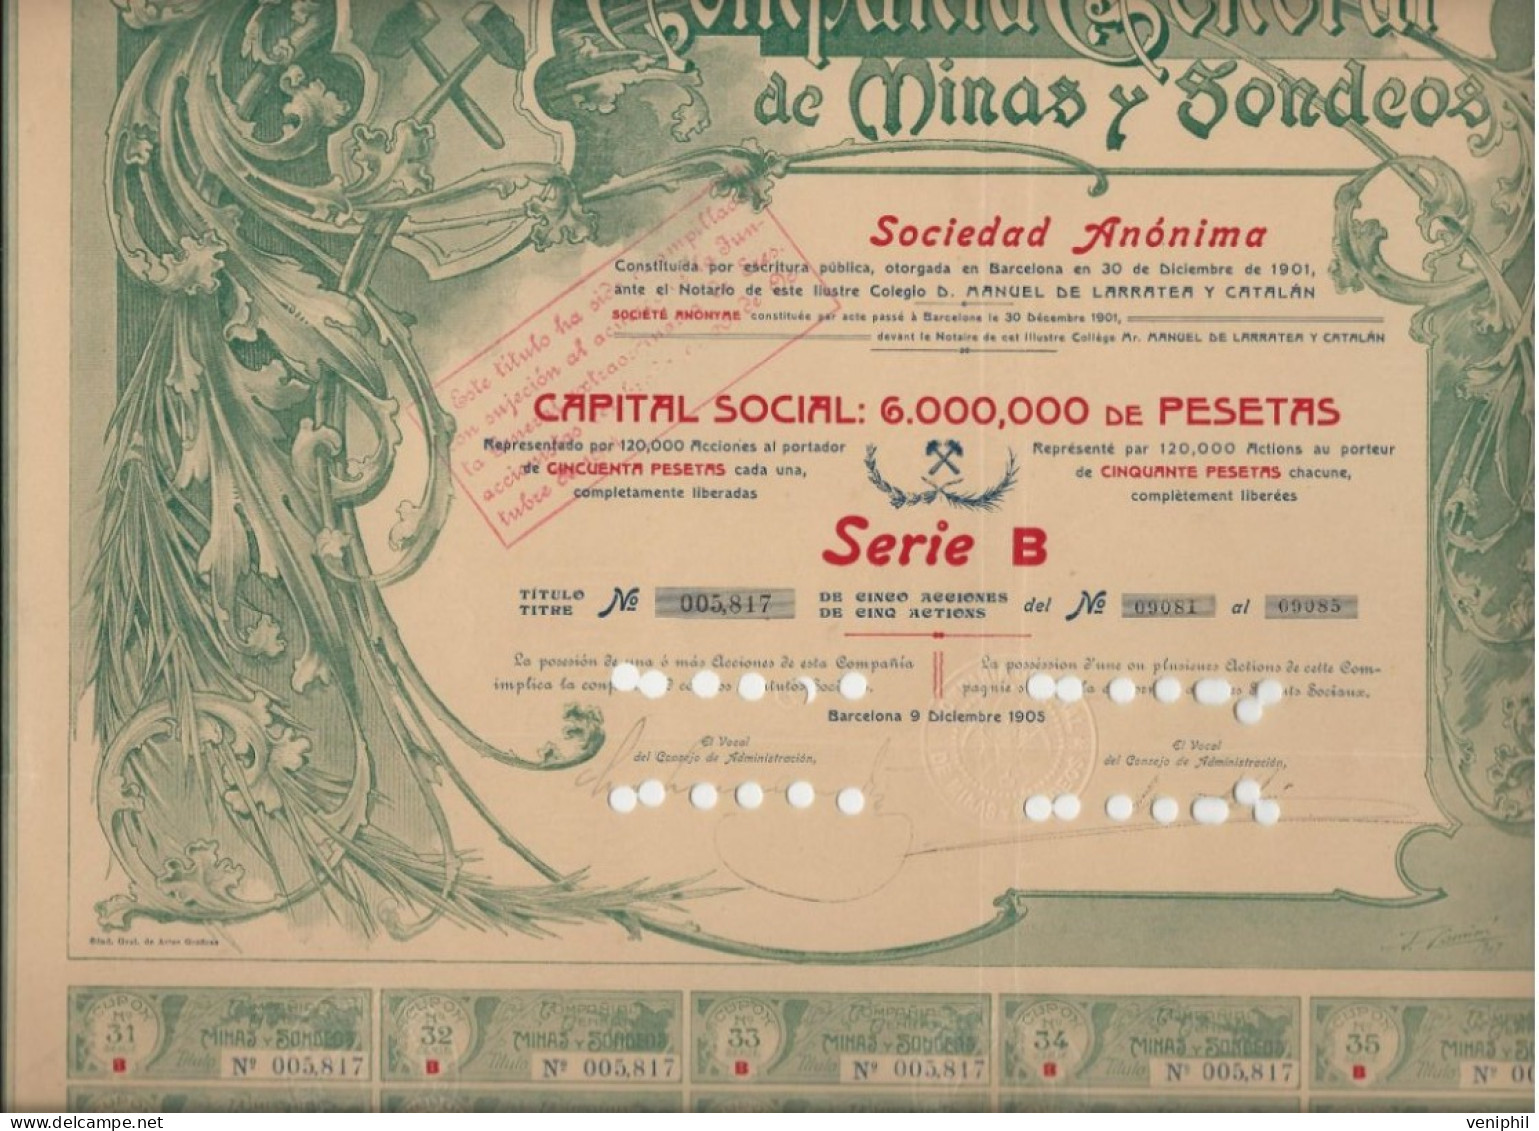 COMPAGNIE GENERAL DES MINES Y SODEOS - TITRE DE 5 ACTIONS DE 50 PSETAS -1905 BARCELONE - Mijnen